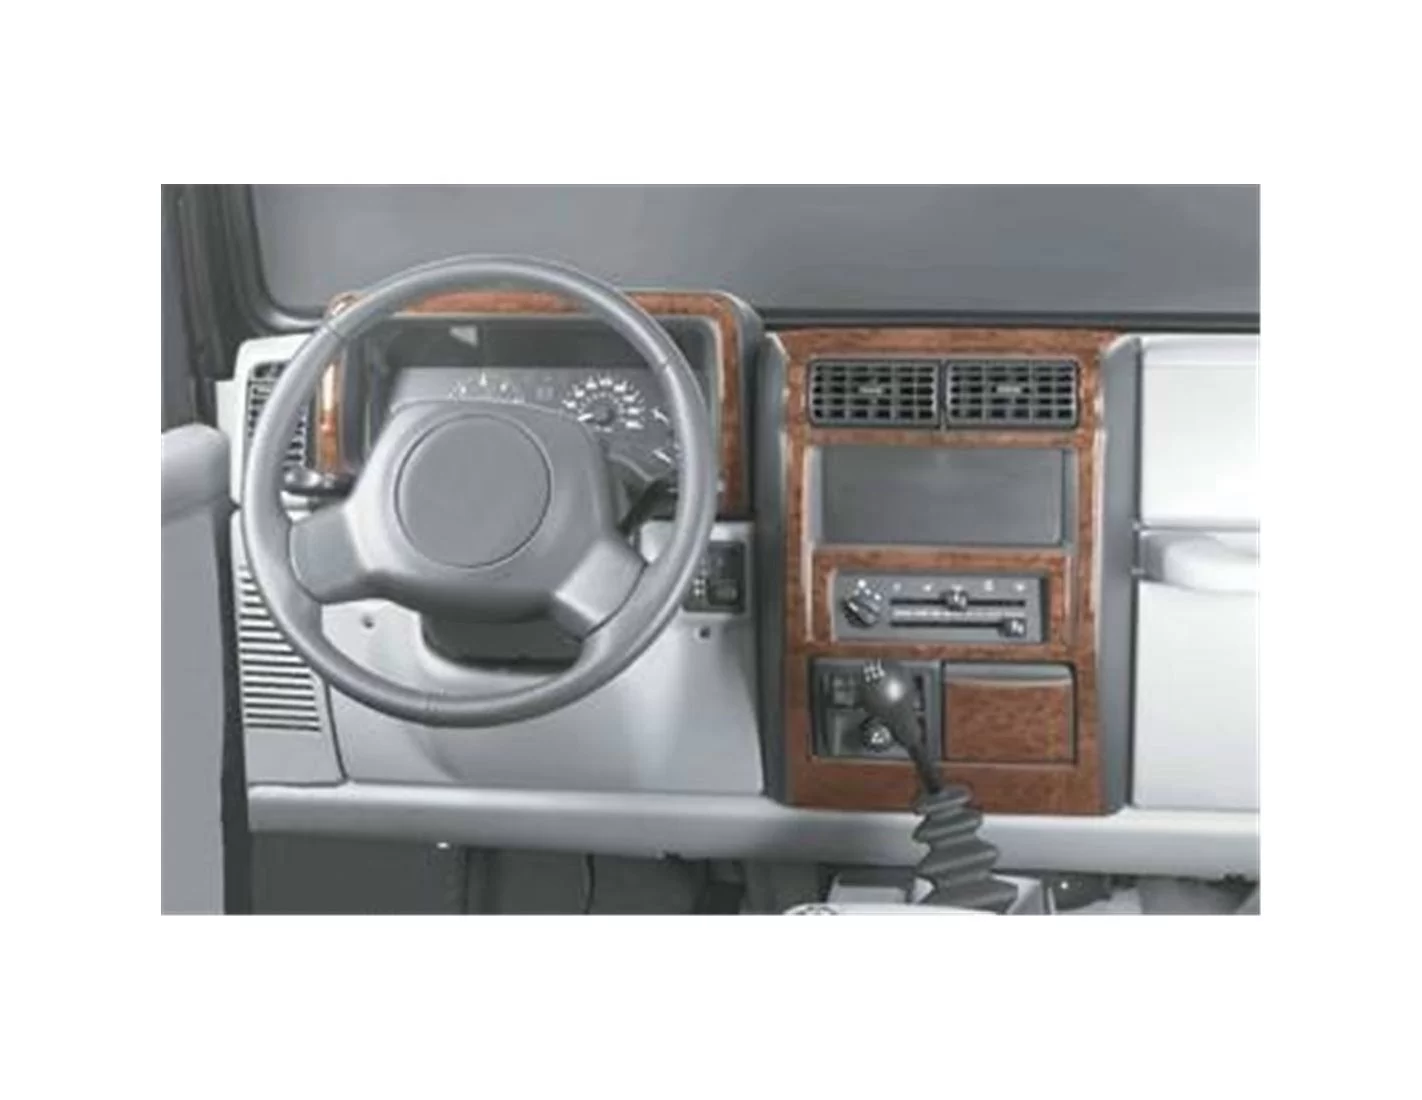 Chrysler Wrangler 09.1996 3D Decor de carlinga su interior del coche 10-Partes